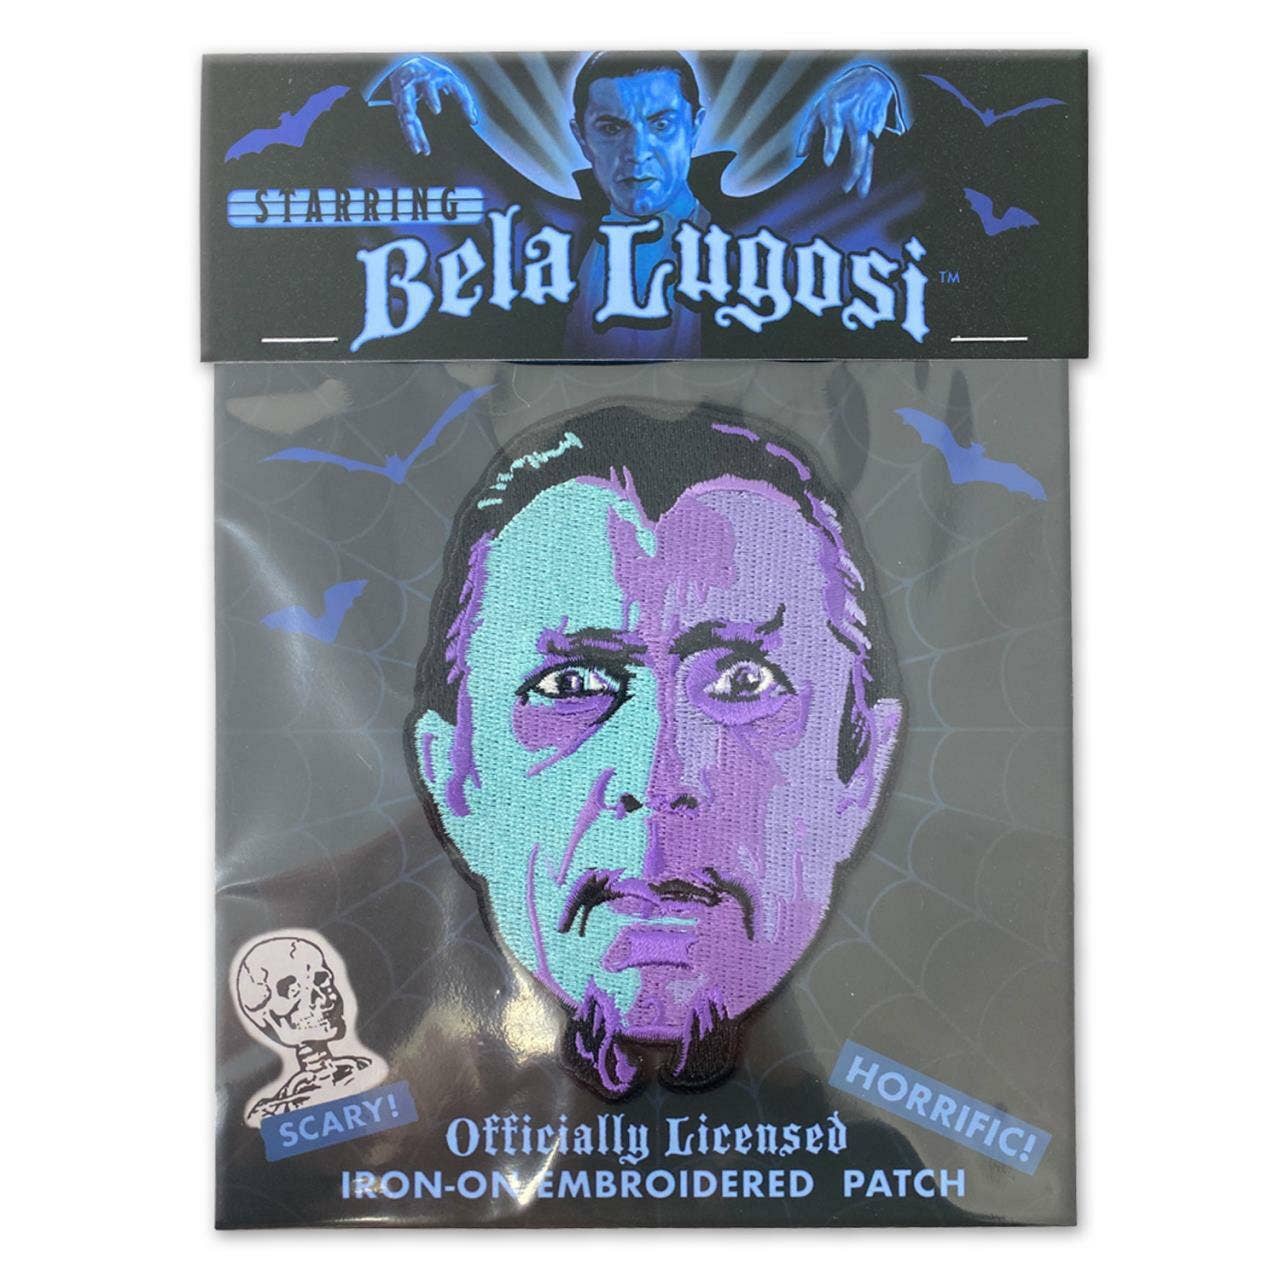 Bela Lugosi White Zombie Iron-On Patch